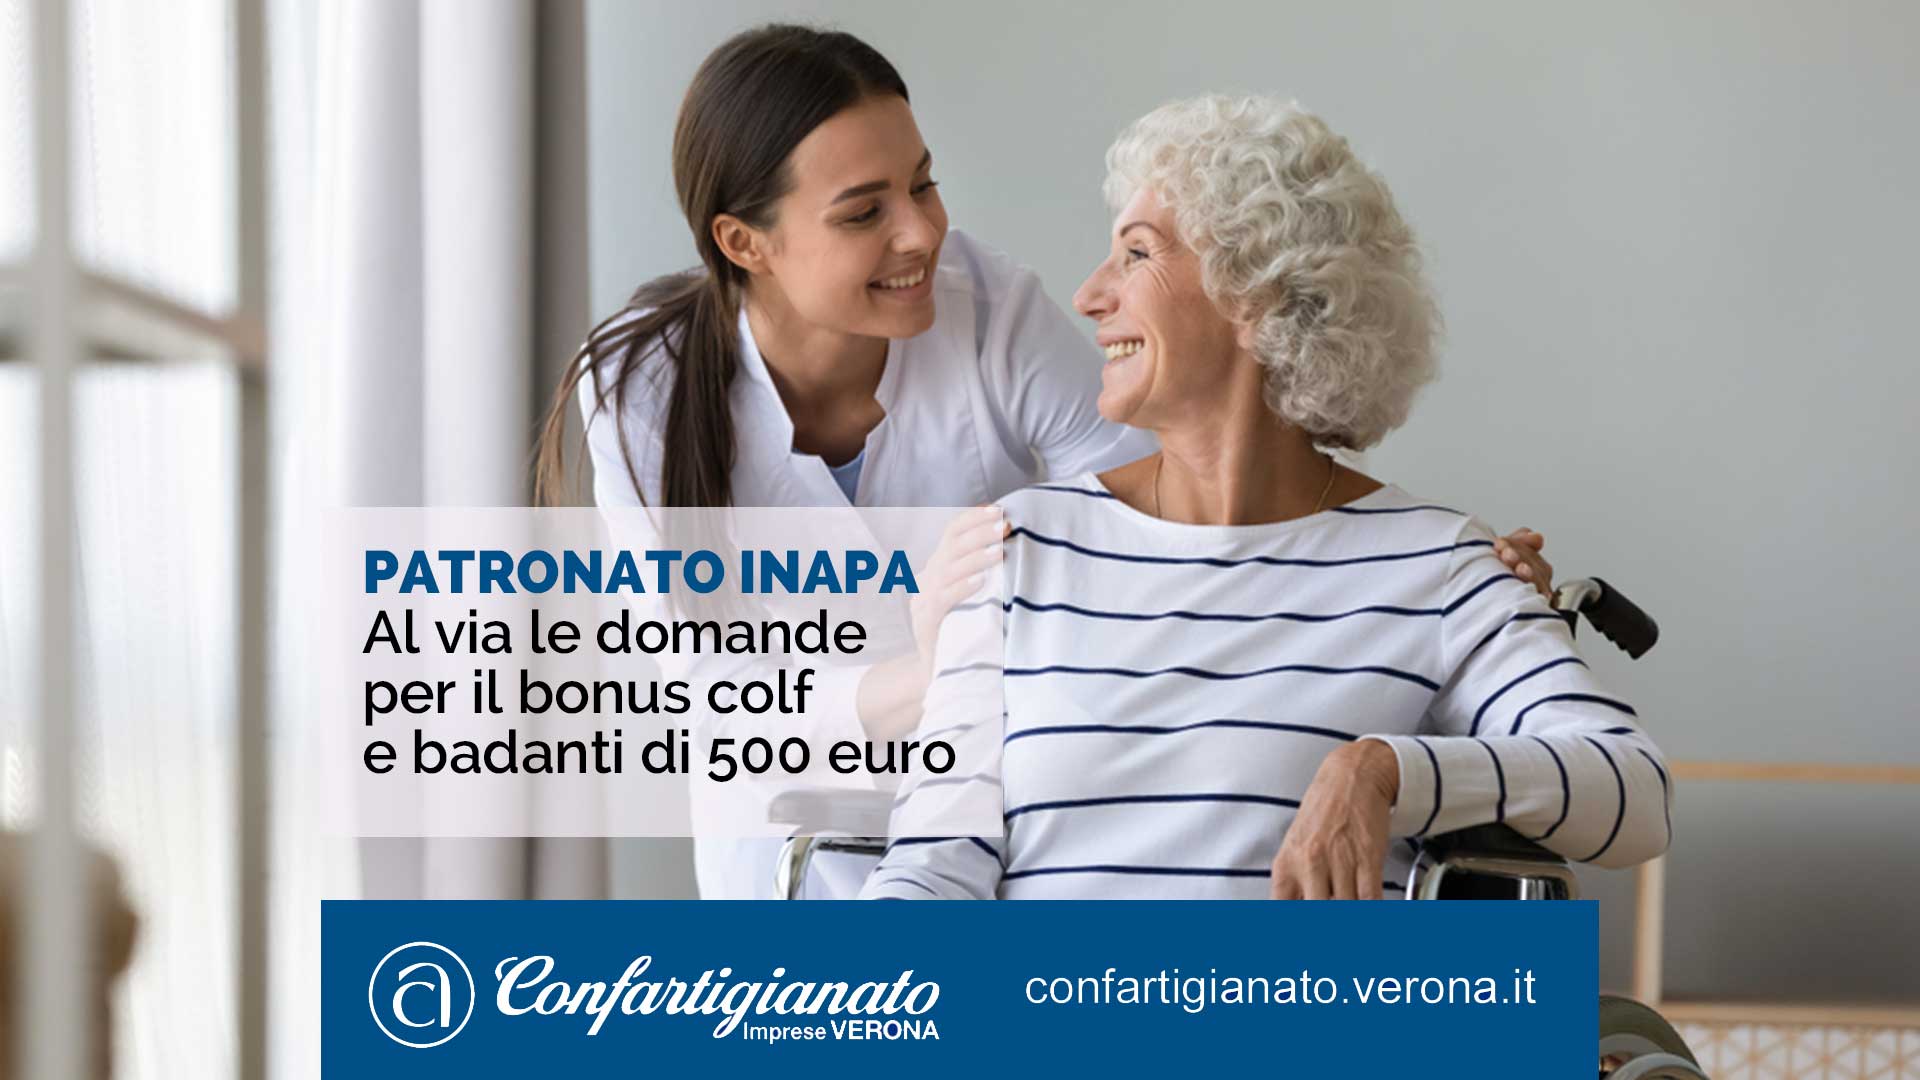 PATRONATO INAPA – Al via le domande per il bonus colf e badanti di 500 euro